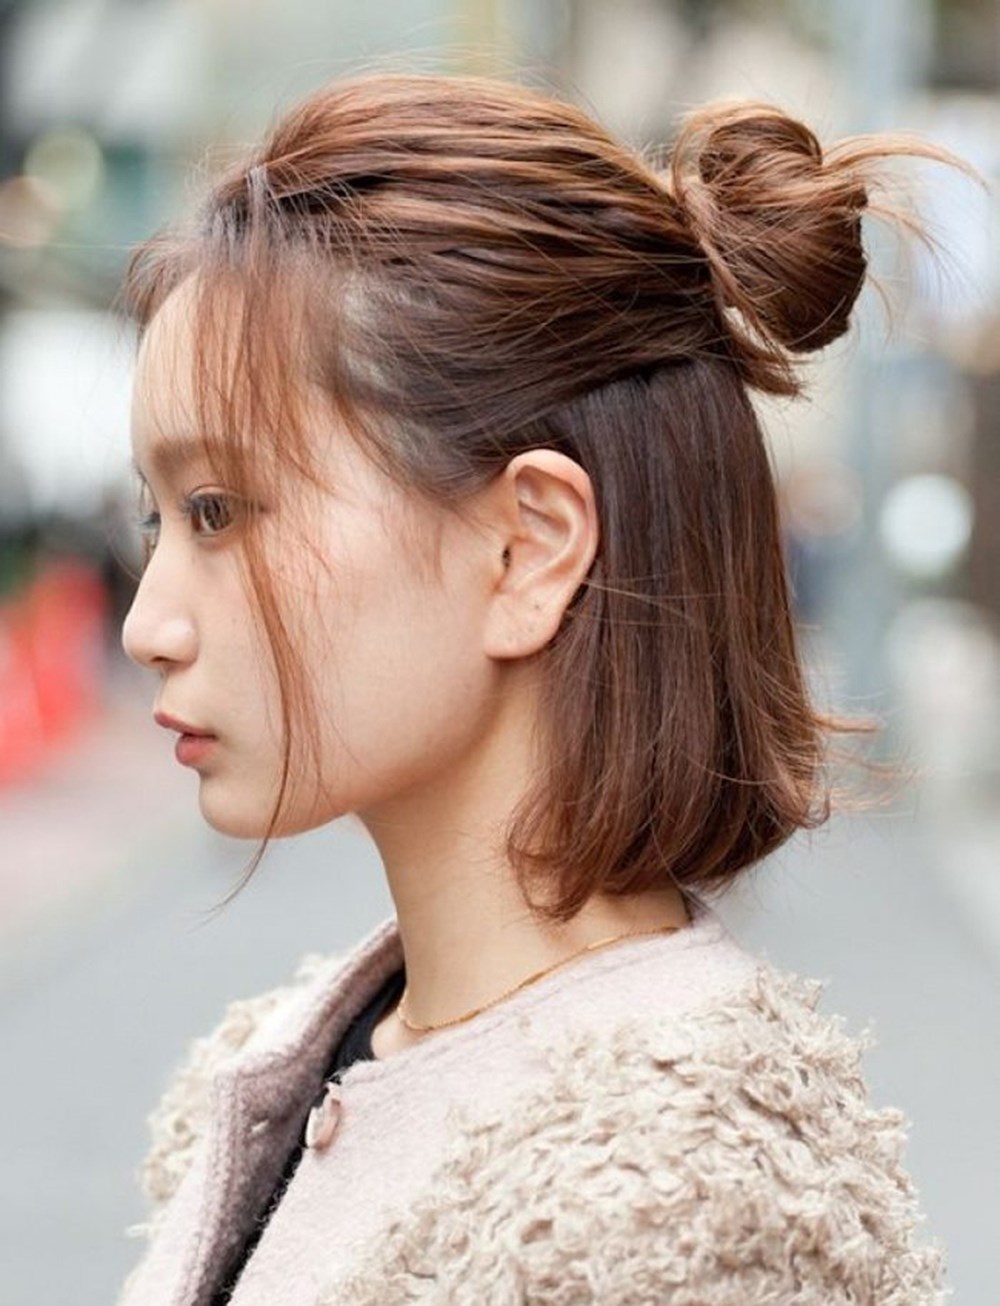 Xu hướng tóc búi tóc Hàn Quốc với nhiều kiểu tạo hình độc đáo sẽ đem lại cho bạn sự trẻ trung và nổi bật.